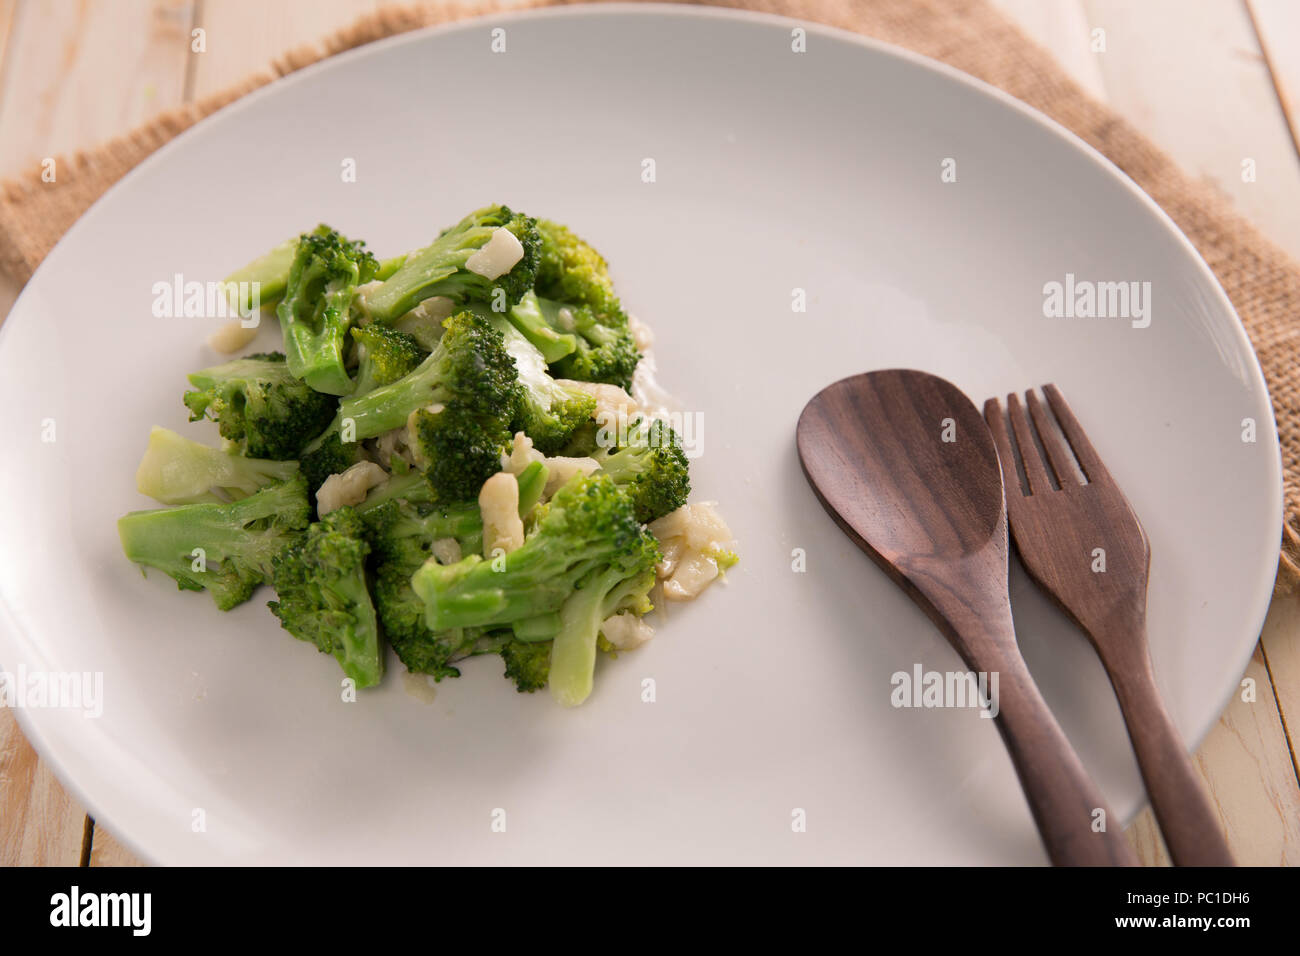 Stir fried broccoli or cah brokoli Stock Photo